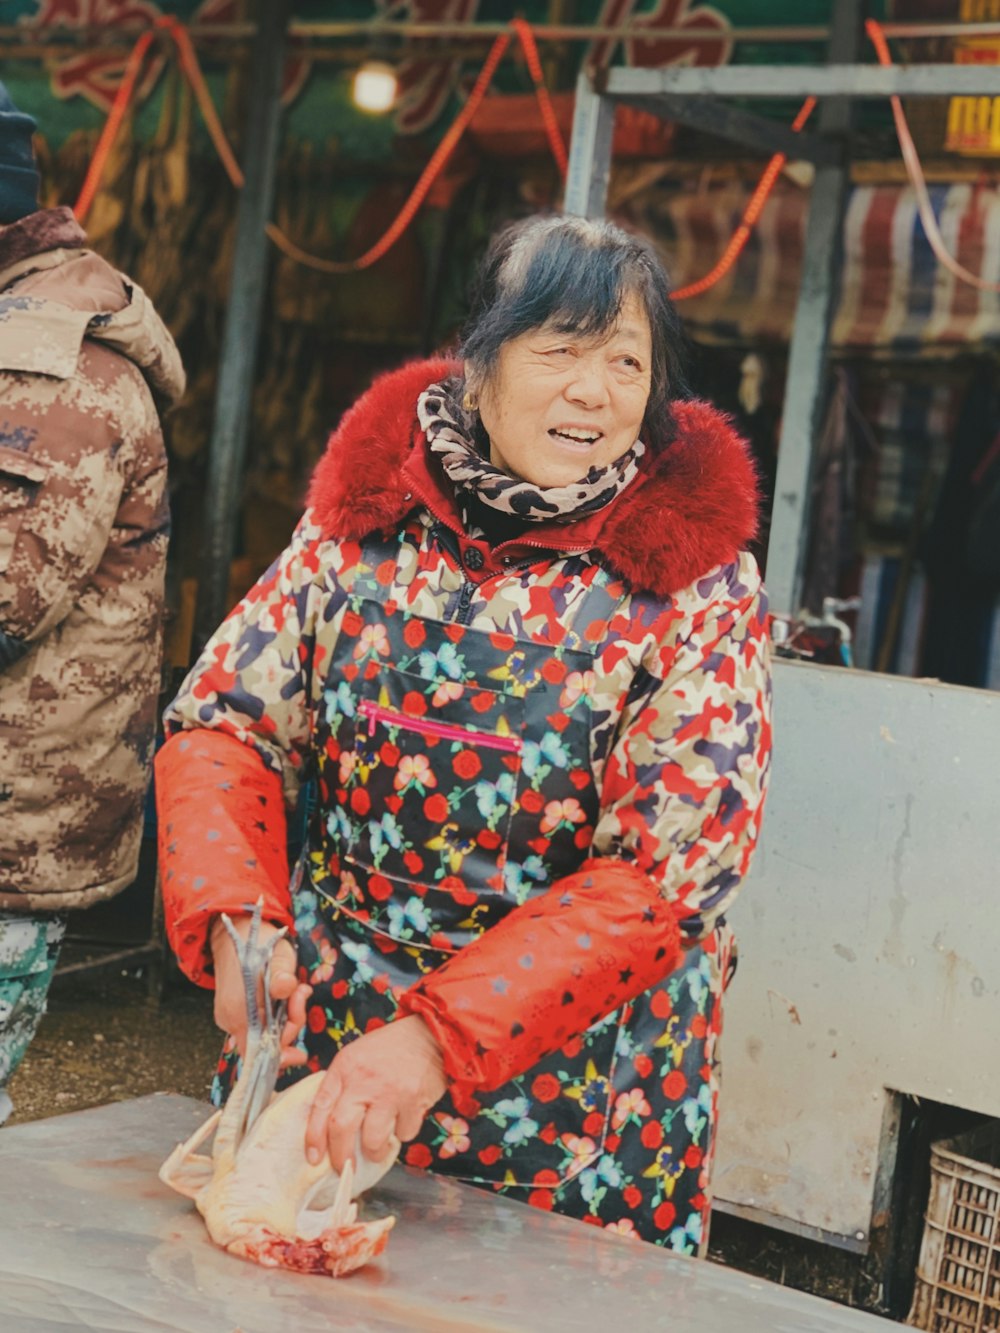 femme en manteau à pois rouge et noir tenant un bâton blanc photo – Photo  莱茵达路Gratuite sur Unsplash